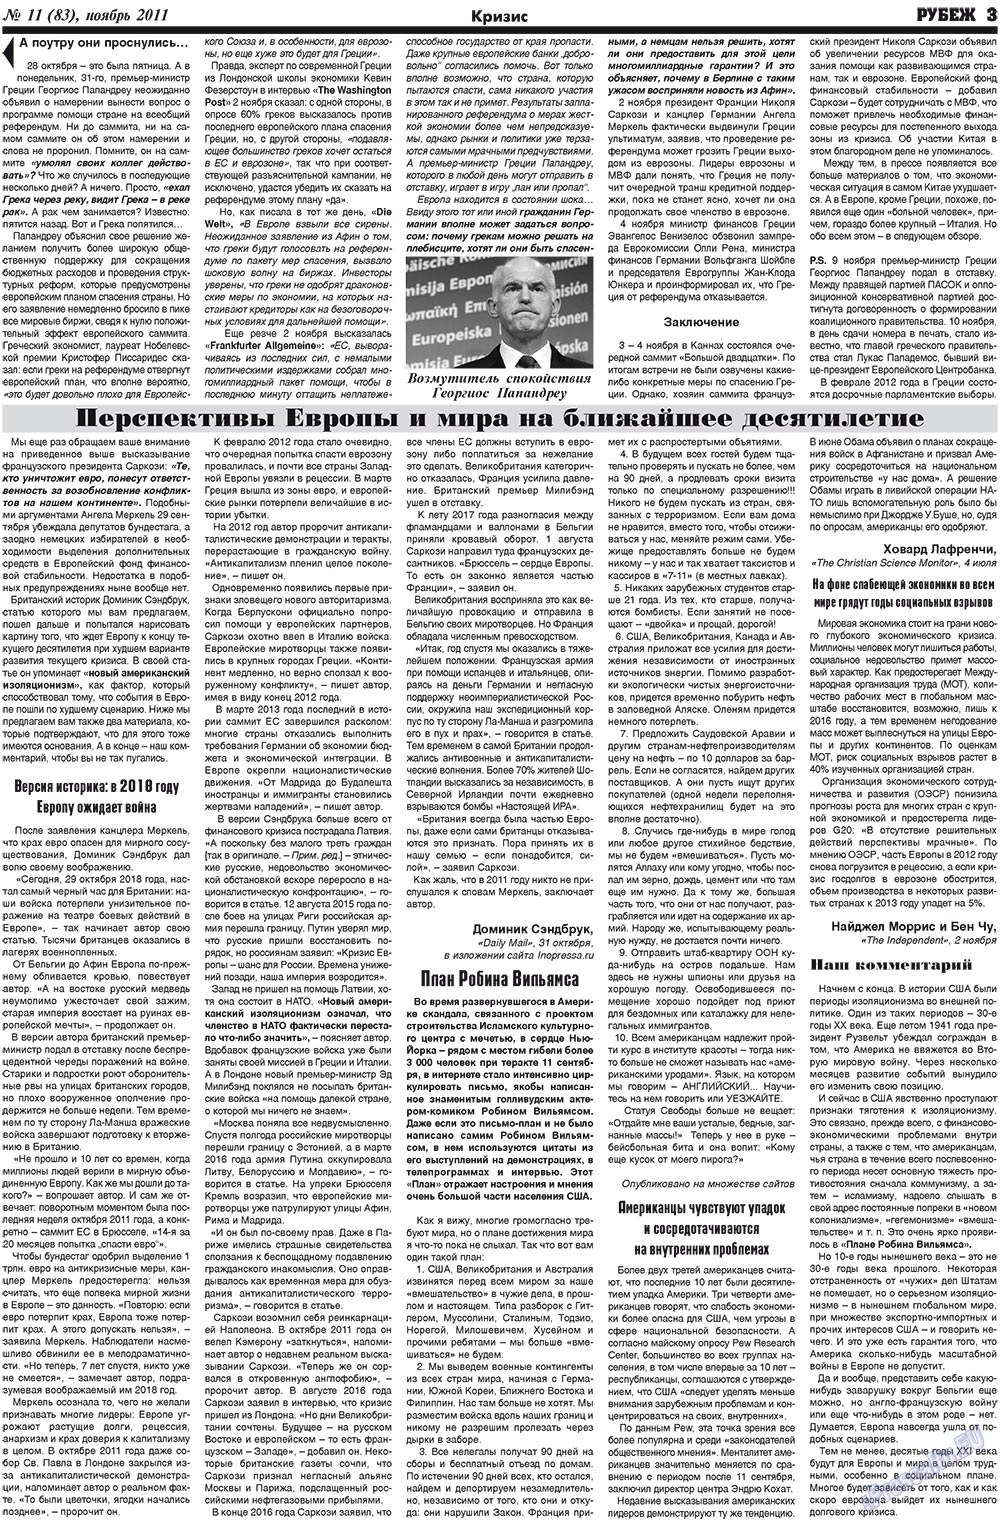 Рубеж (газета). 2011 год, номер 11, стр. 3